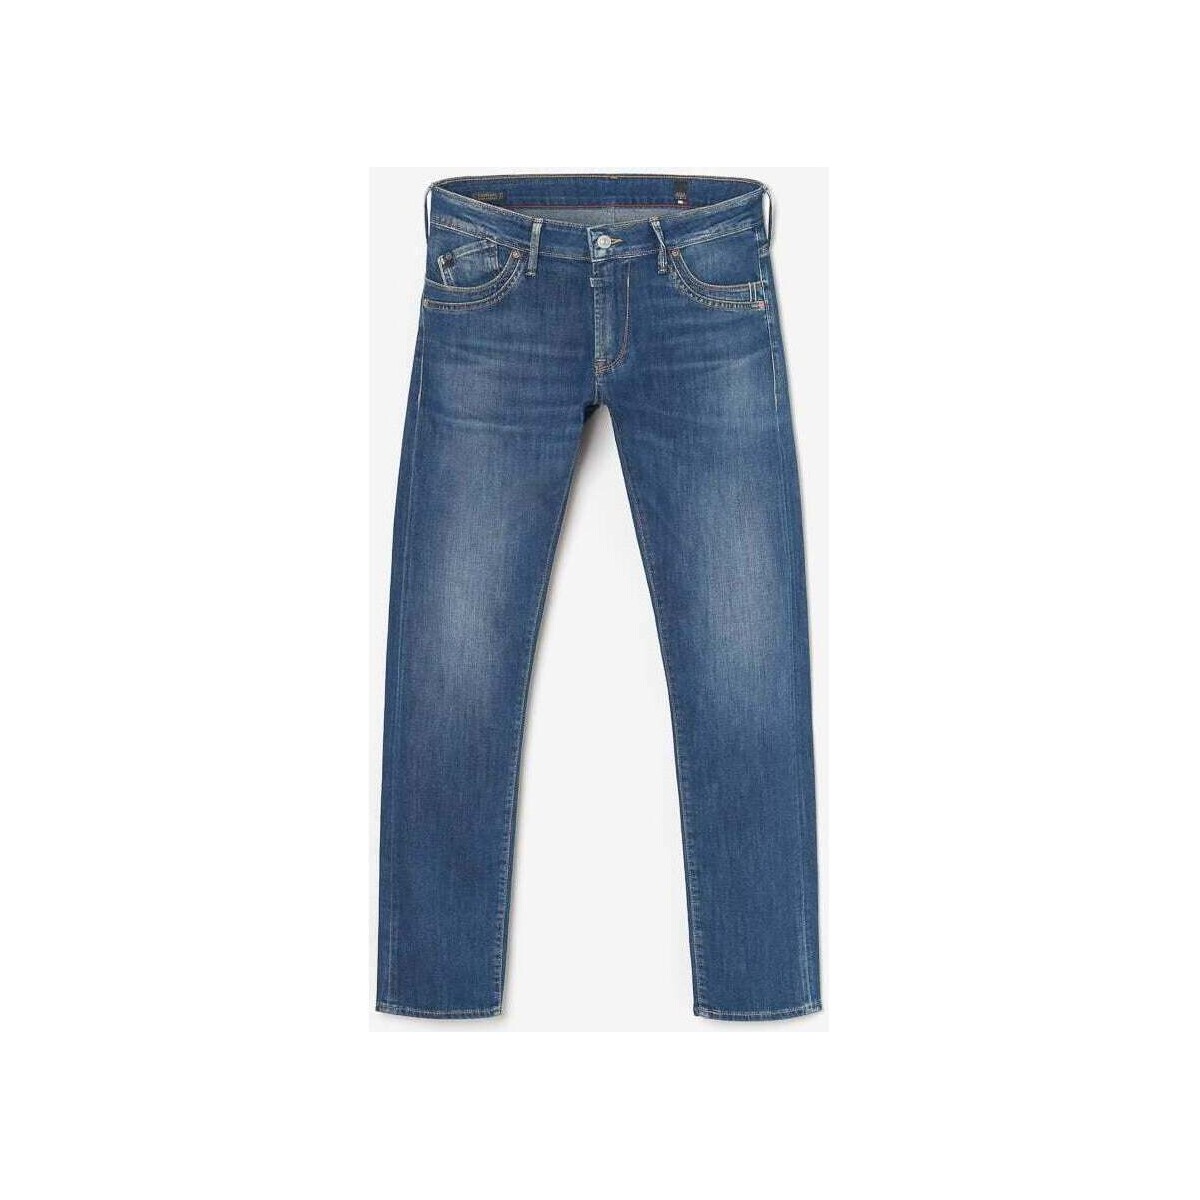 Le Temps des Cerises Bleu Sadroc 800/12 regular jeans bleu rx22Ynda